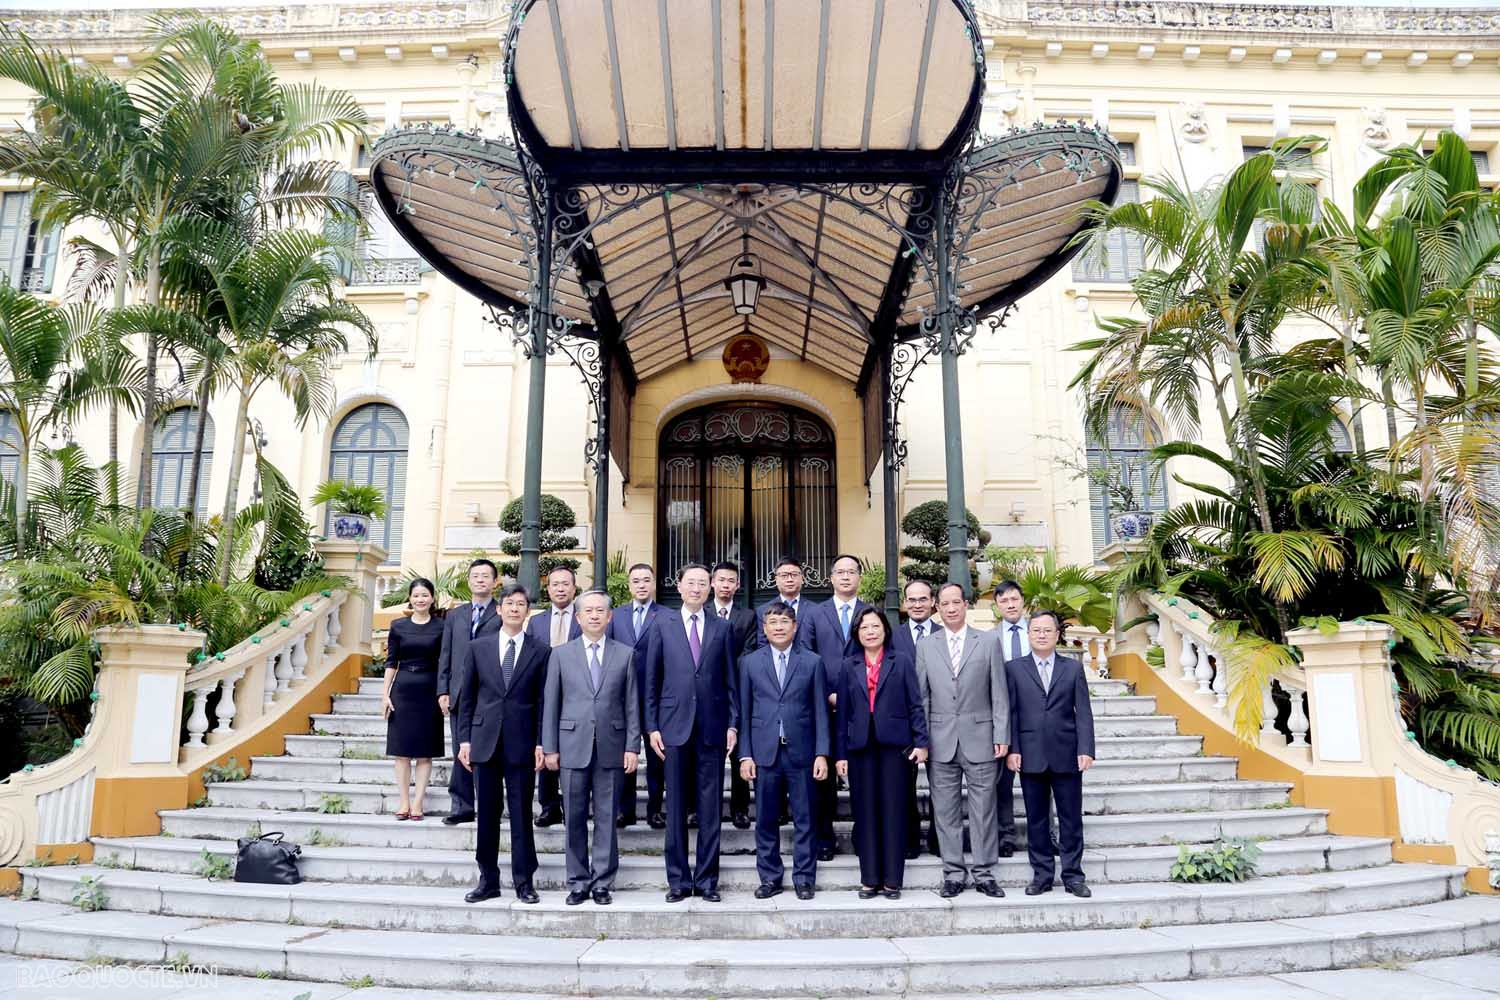 Cuộc gặp hai Trưởng đoàn đàm phán cấp Chính phủ về biên giới lãnh thổ Việt Nam – Trung Quốc